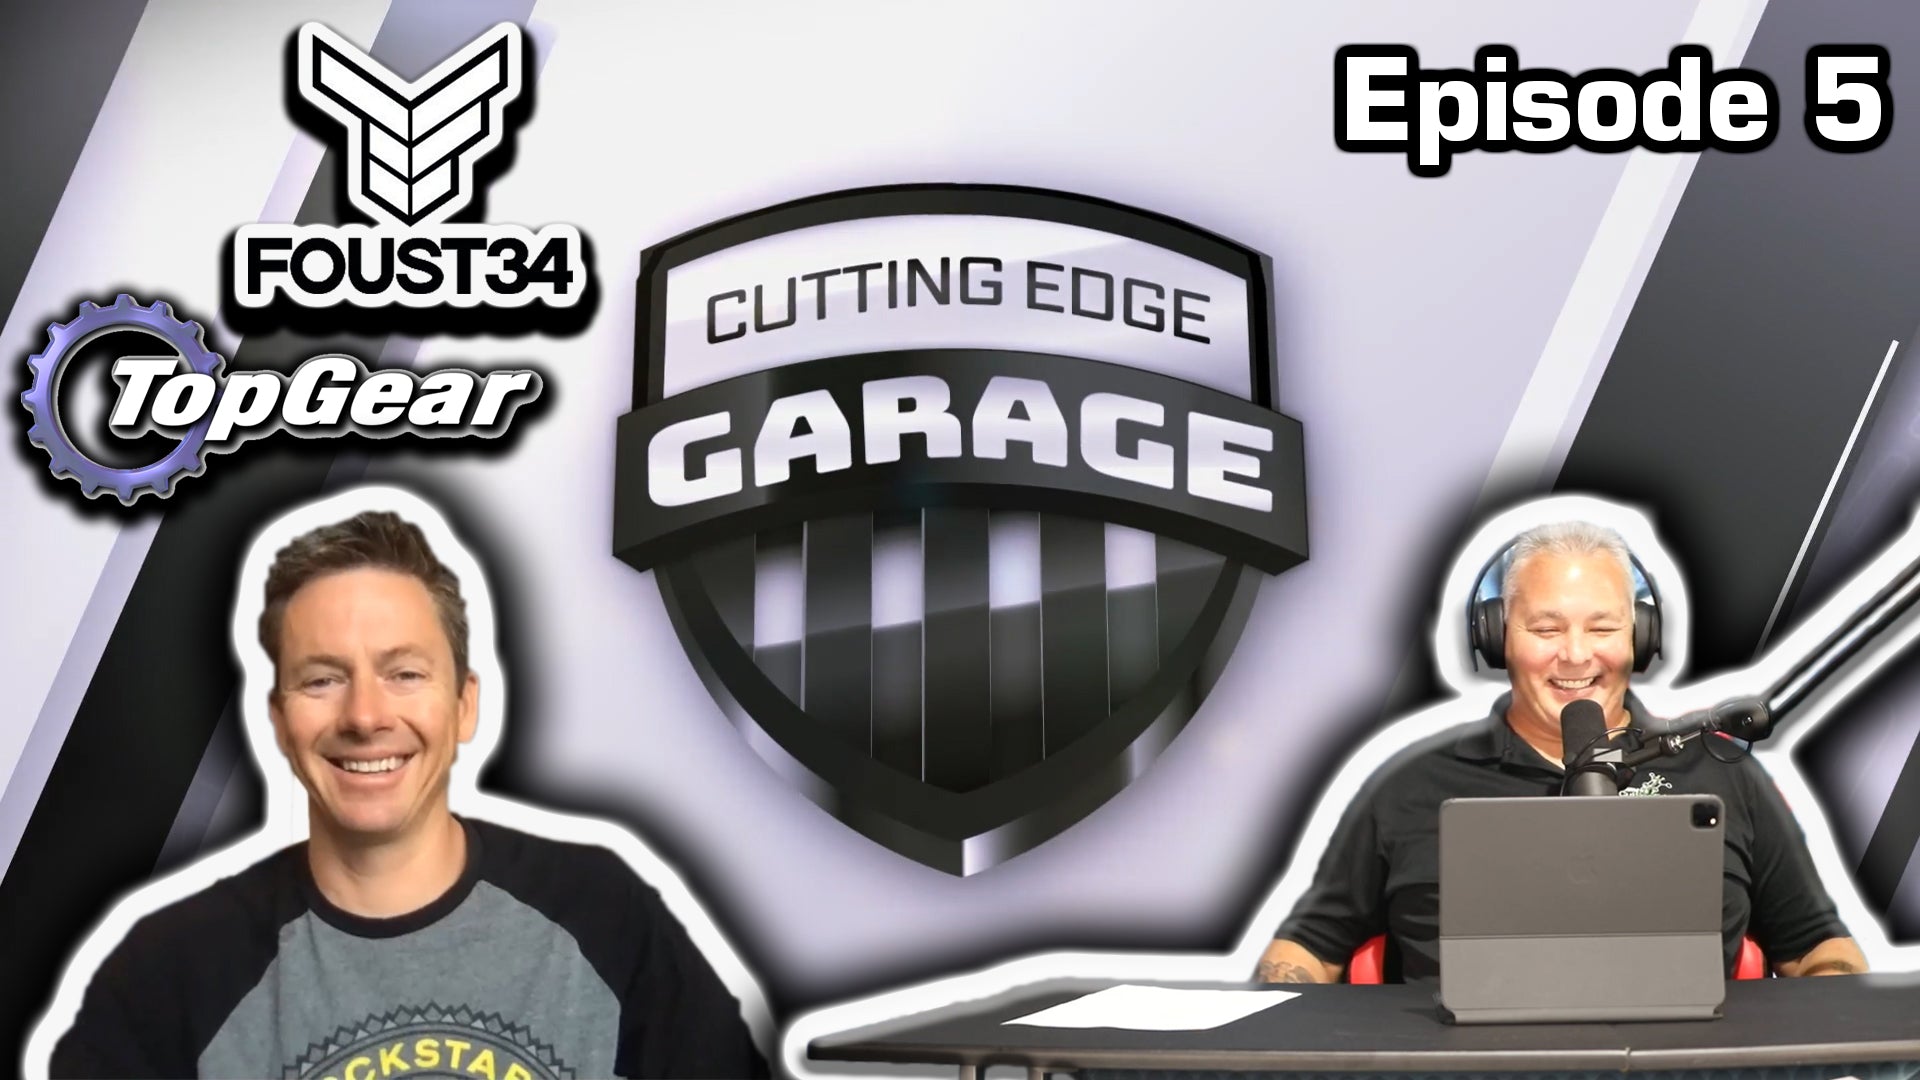 Cutting Edge Garage - Episode 5